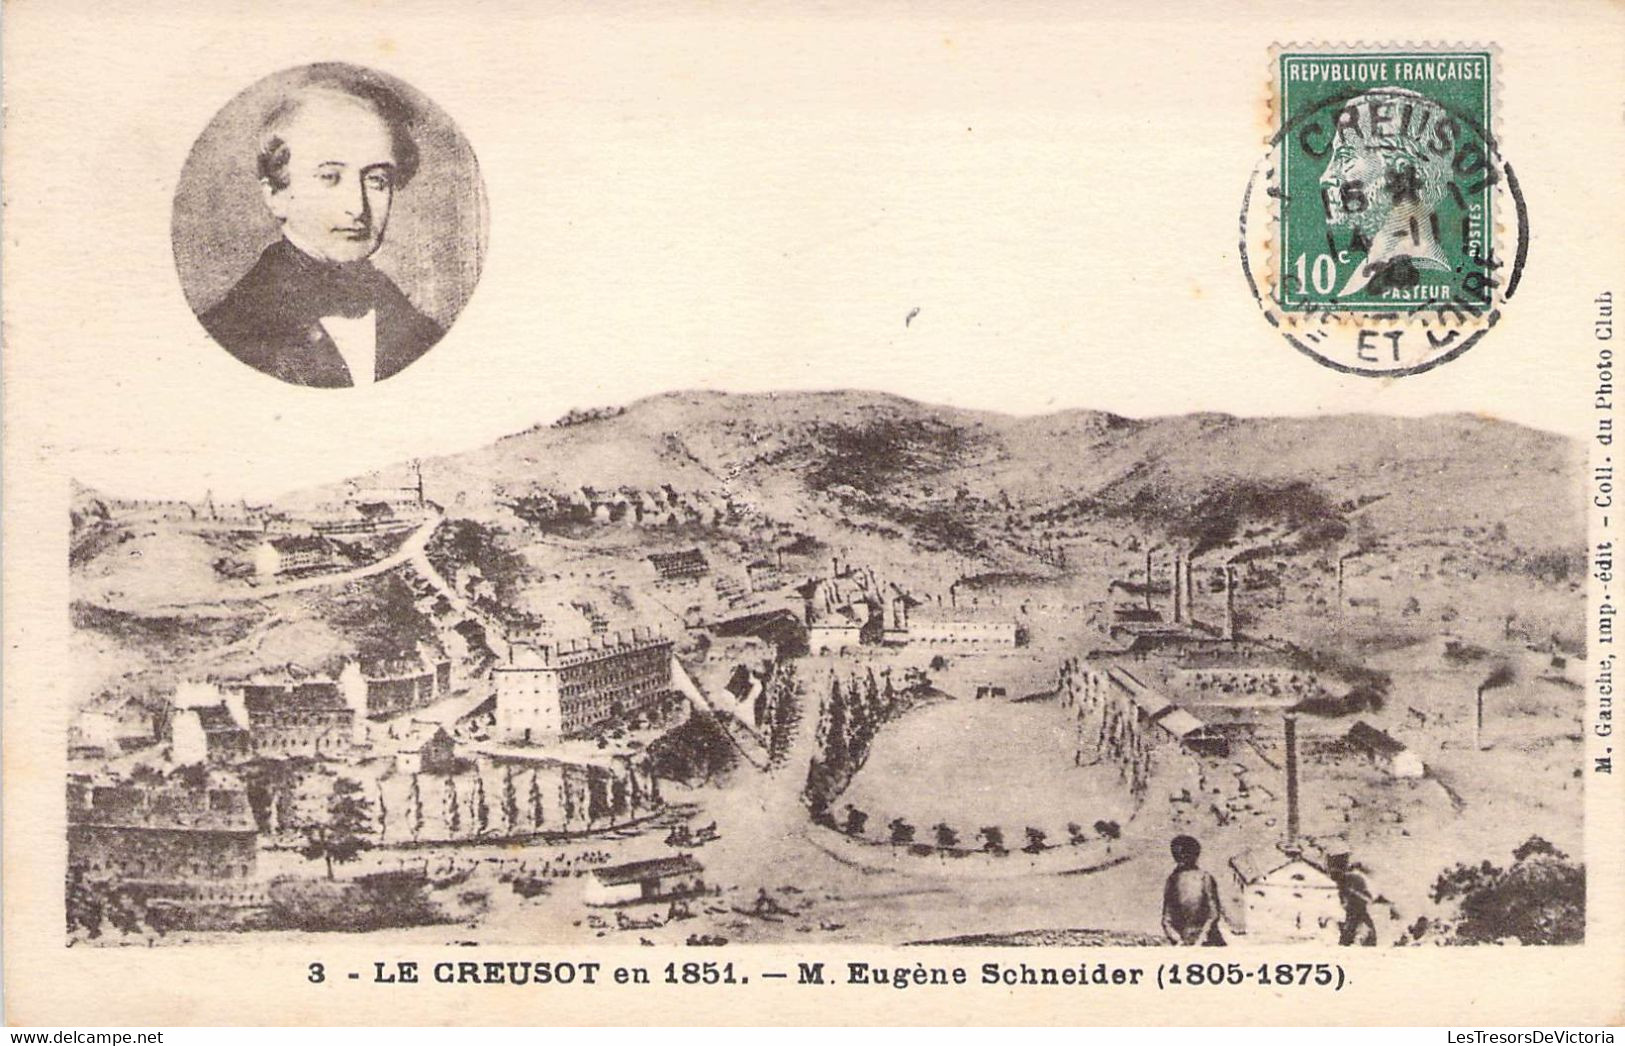 CPA France - Saône Et Loire - Le Creusot En 1851 - M. Eugène Schneider - 1805 - 1875 - Oblitérée 1923 - M. Gauche Edit. - Le Creusot